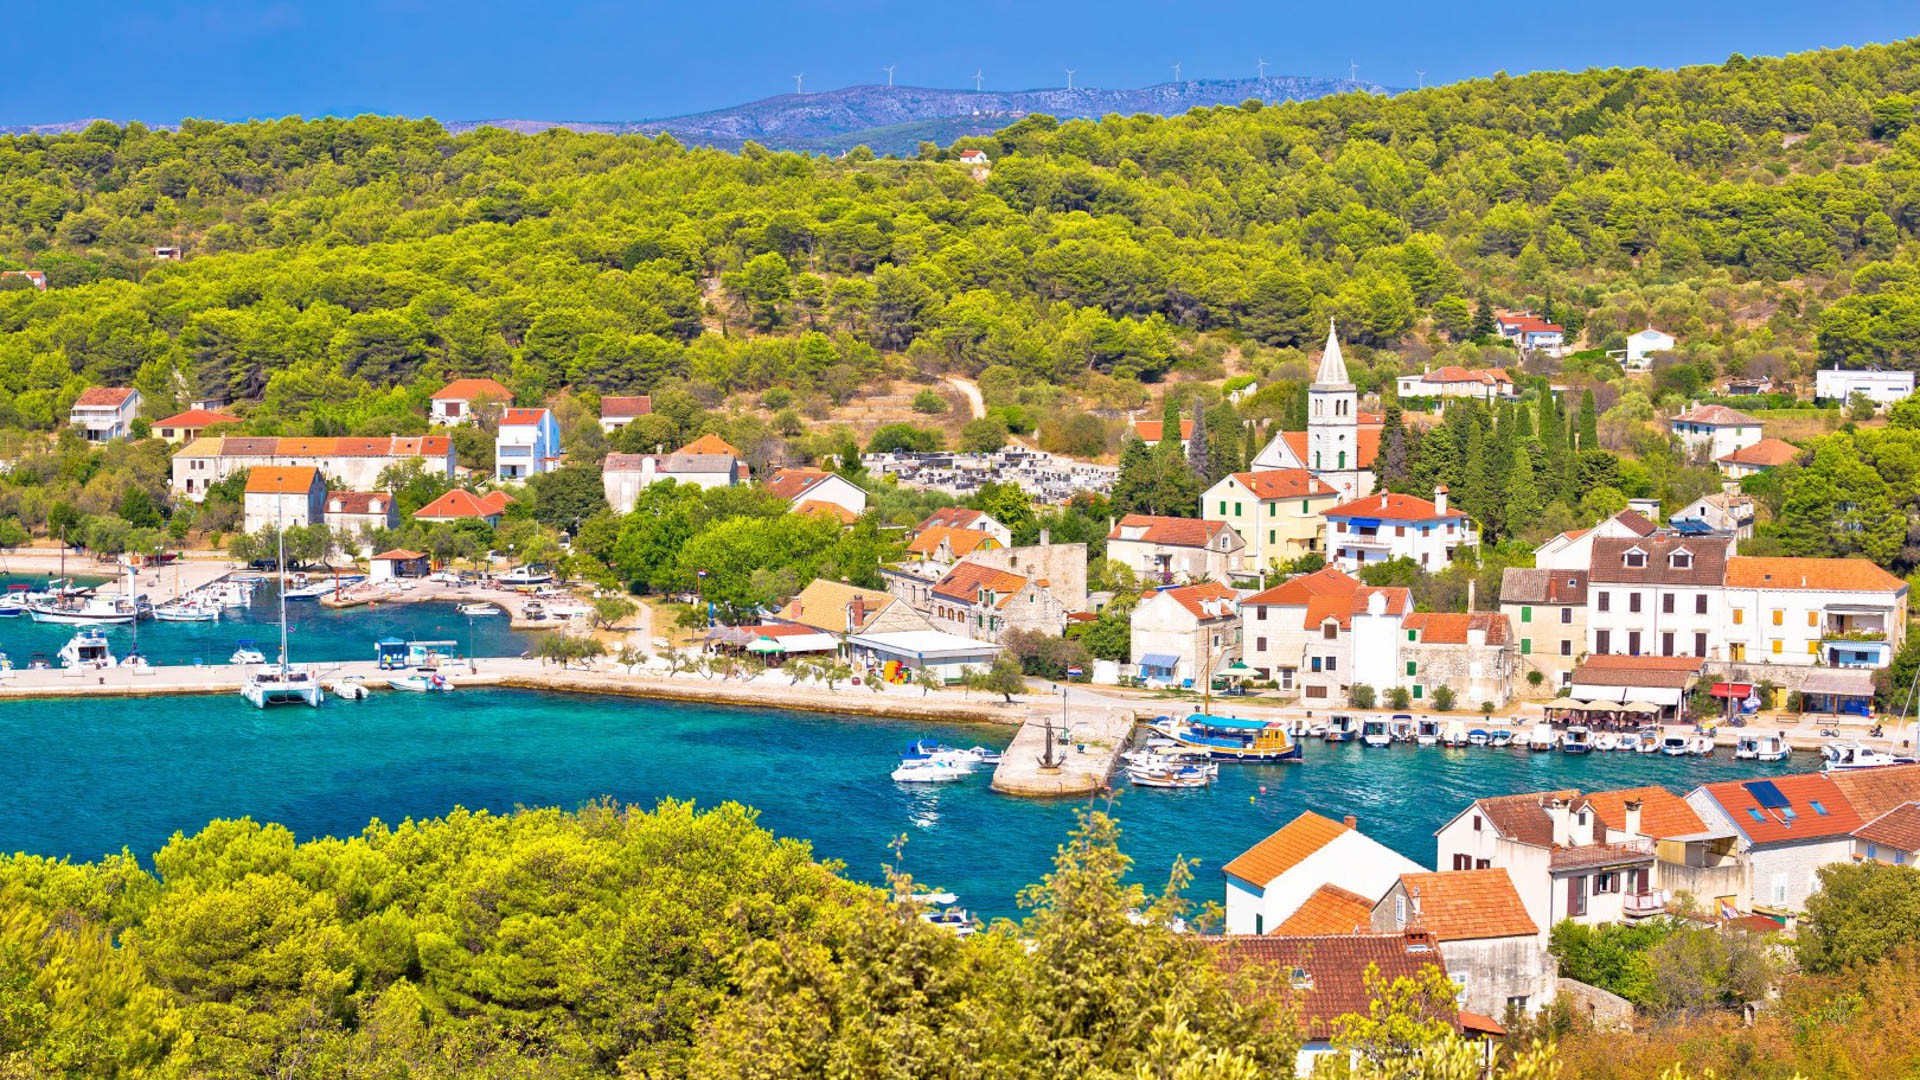 Zlarin | Croatia Holidays Croatia Holidays